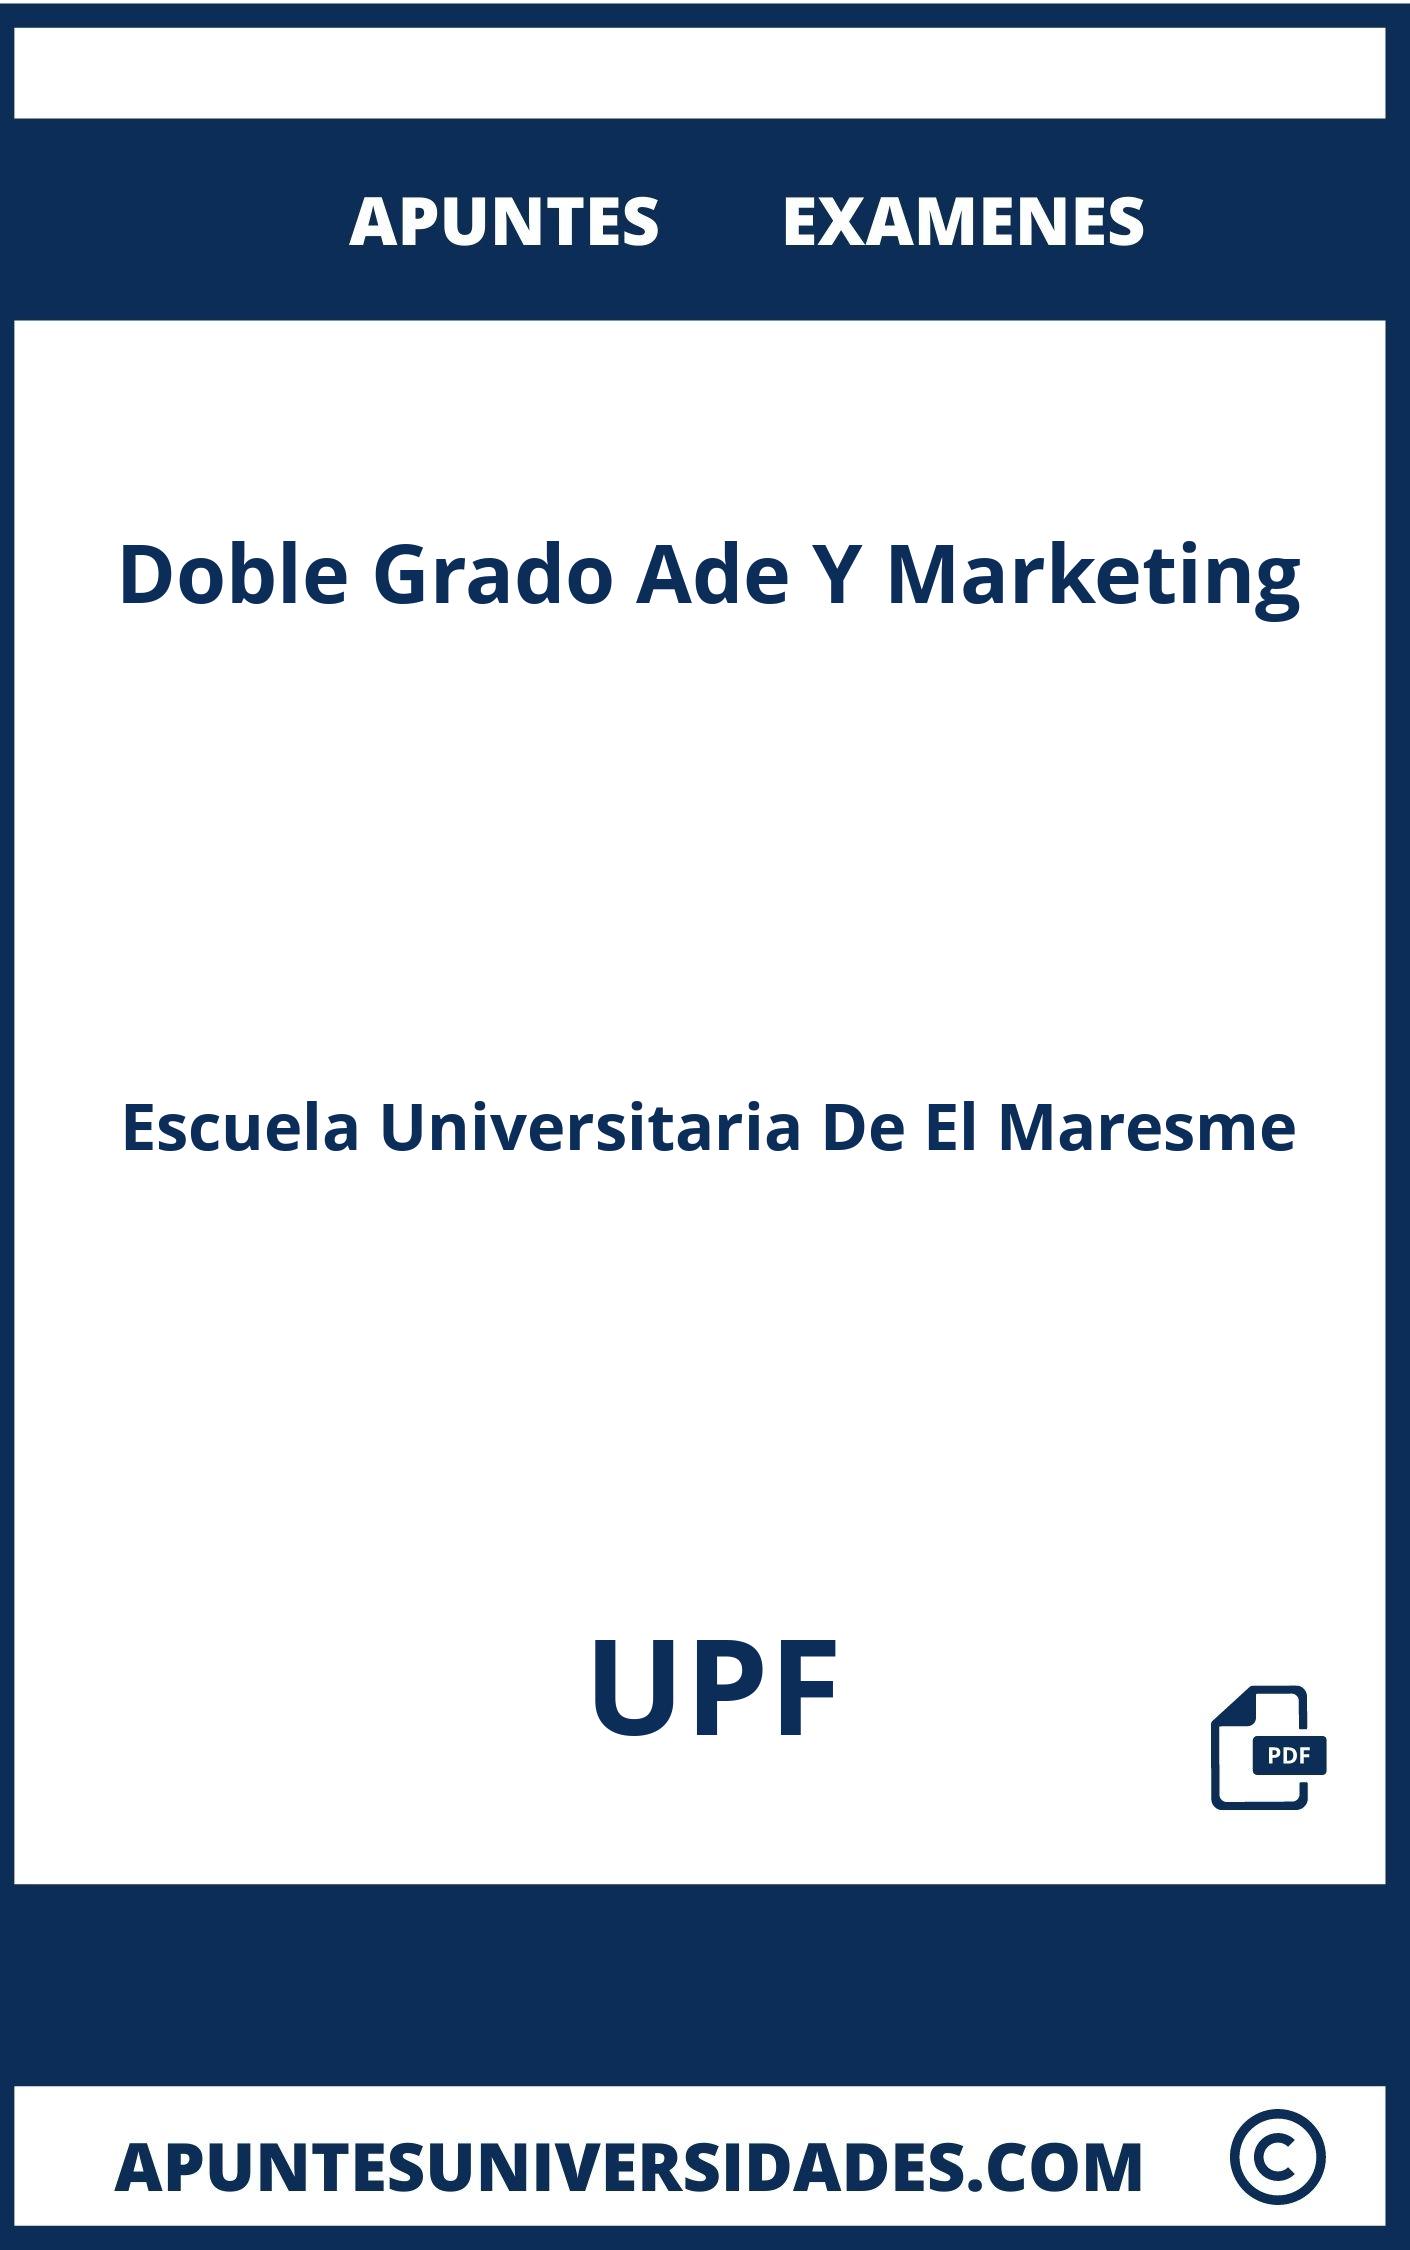 Apuntes y Examenes Doble Grado Ade Y Marketing UPF